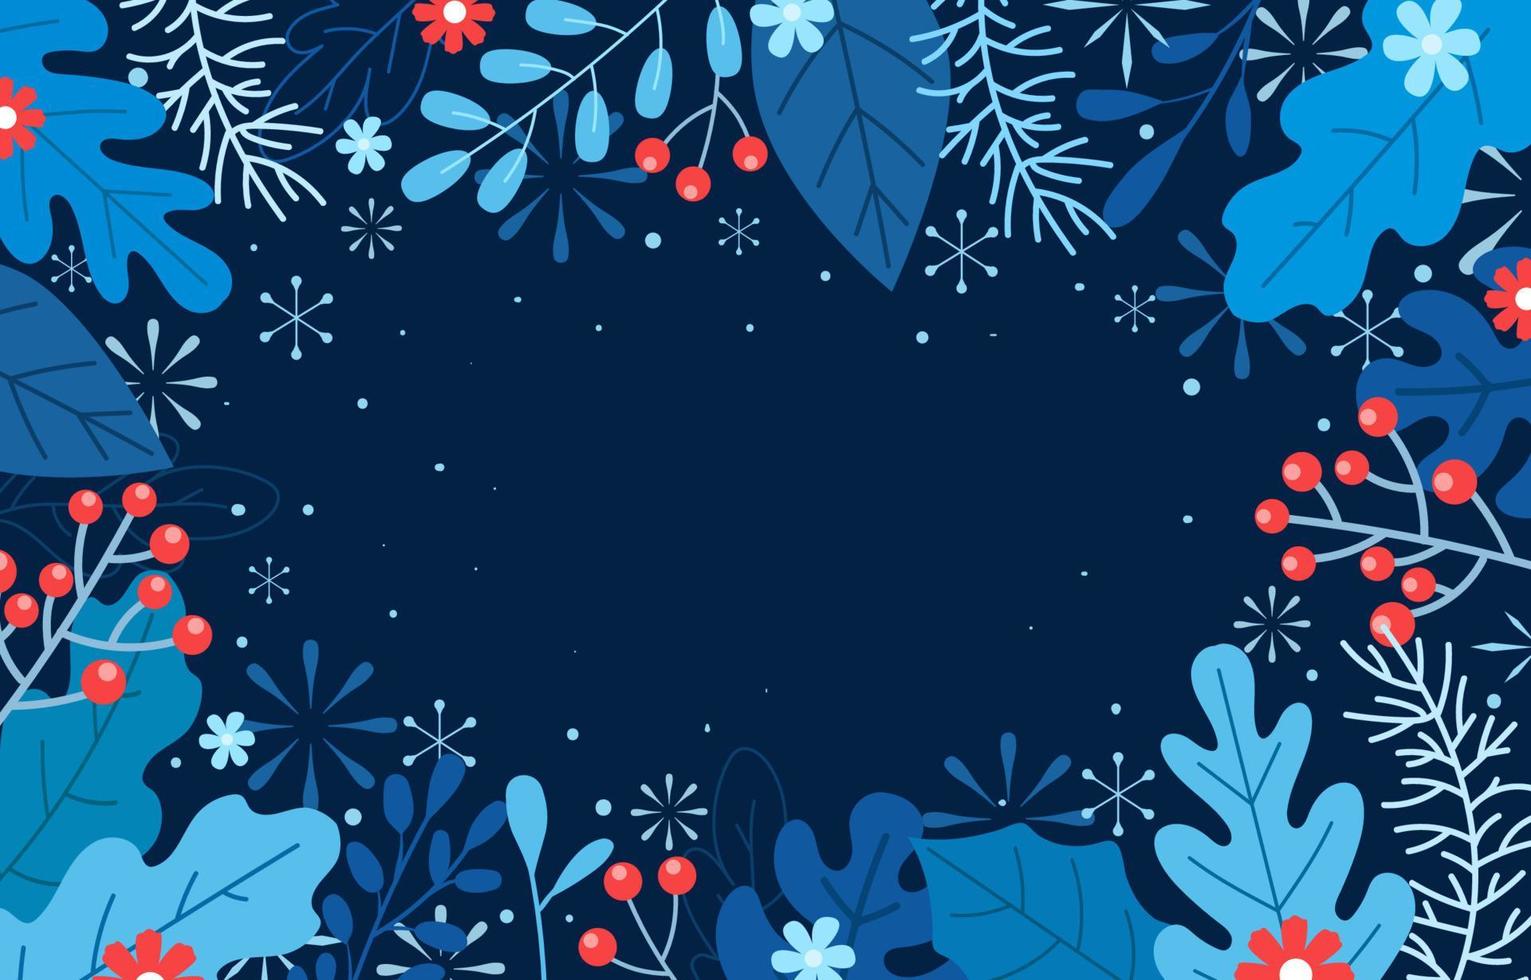 fronteira de folhas de inverno com fundo azul vetor